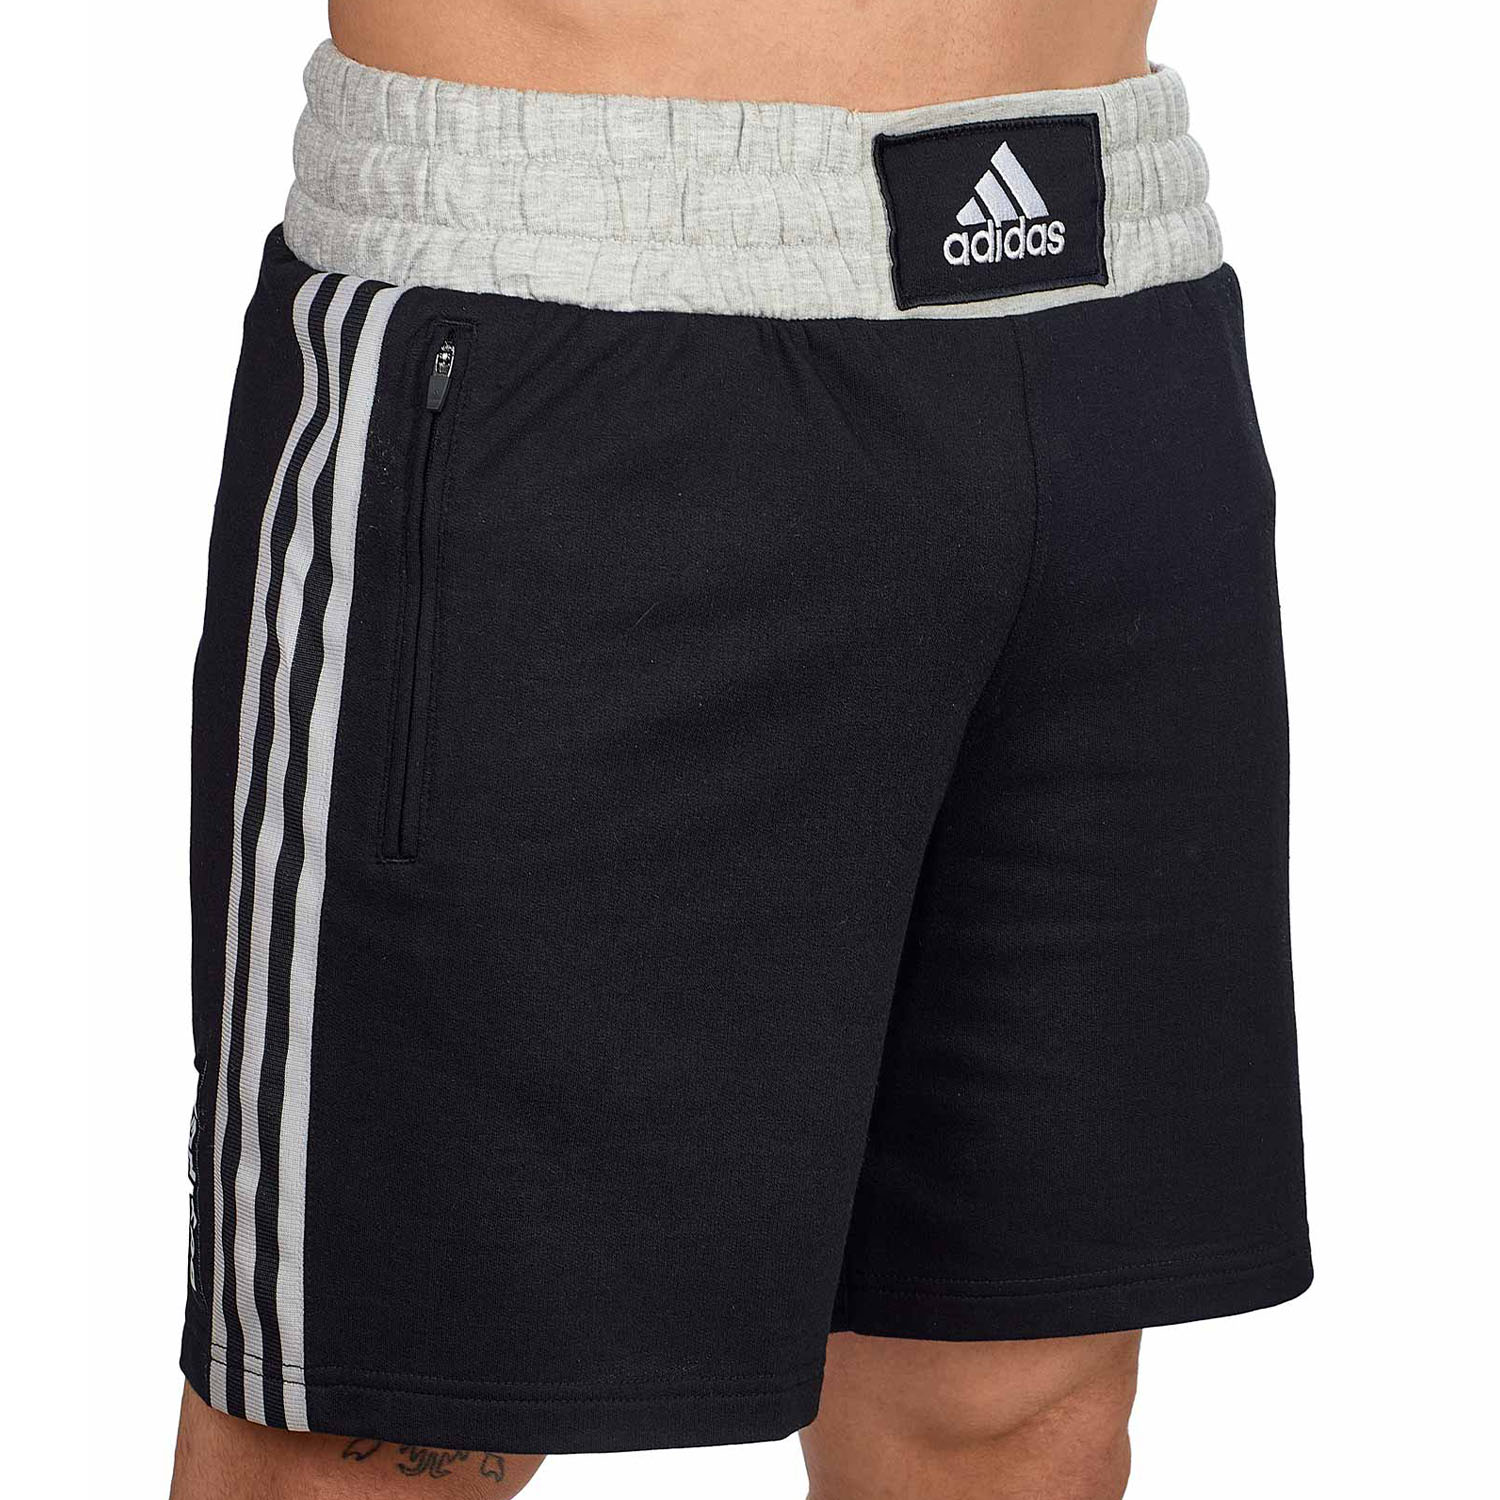 adidas Fitness Shorts, Boxwear Traditional, schwarz-weiß